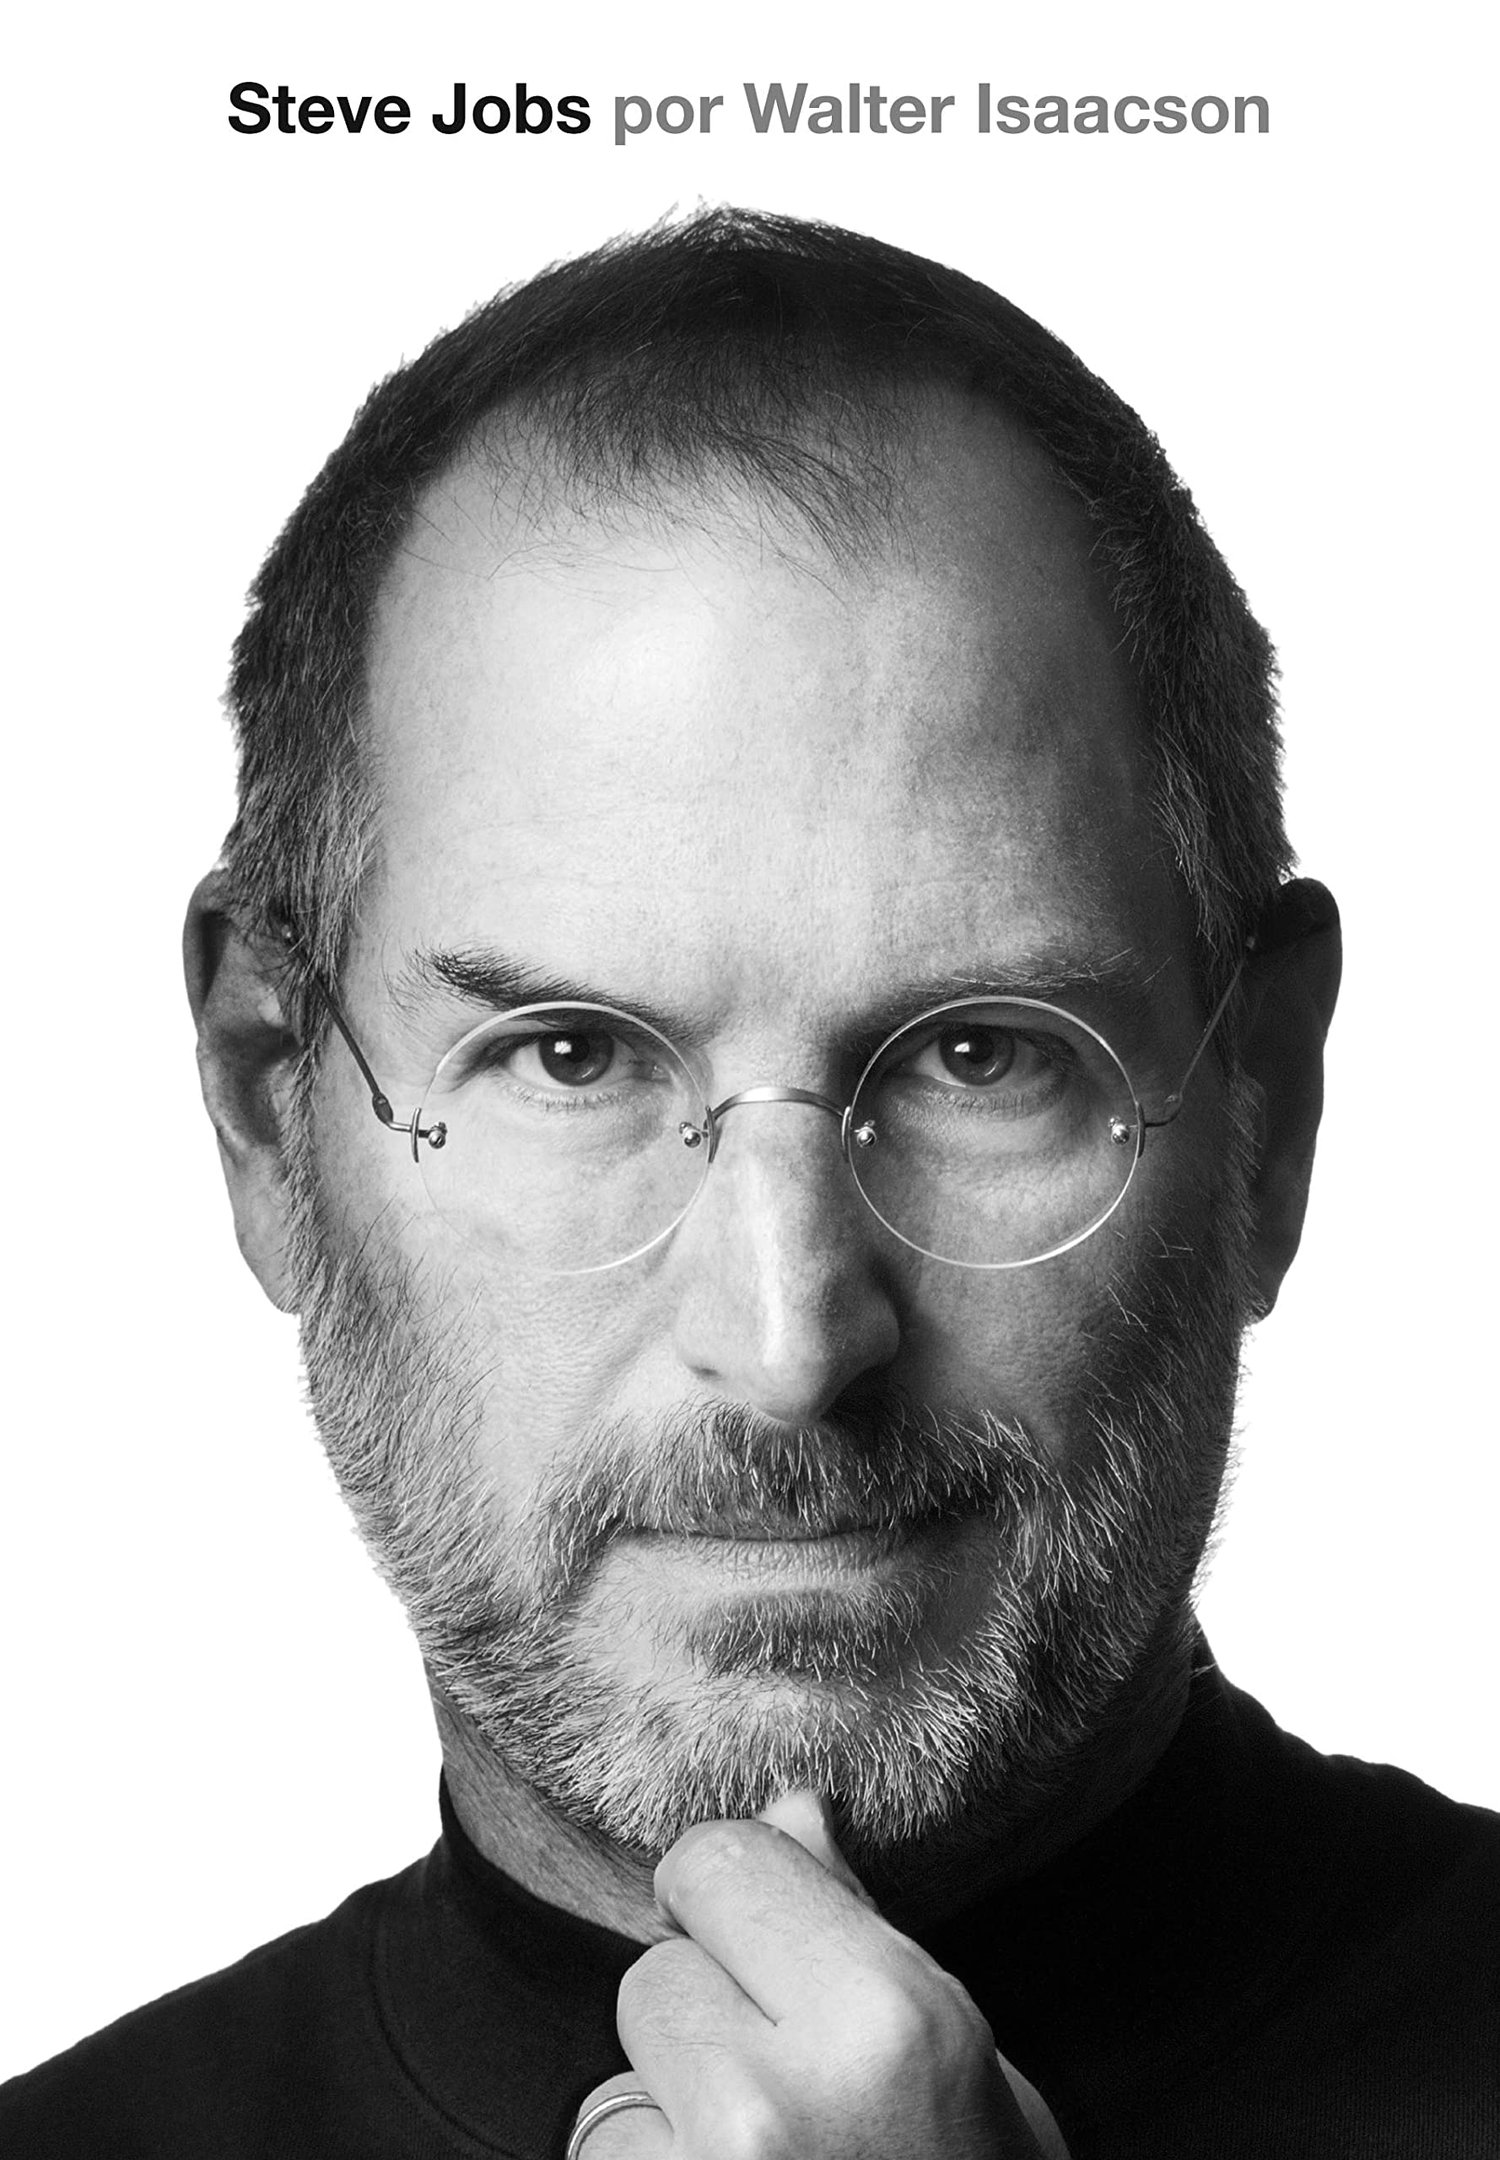 Capa do livro Steve Jobs (2011).